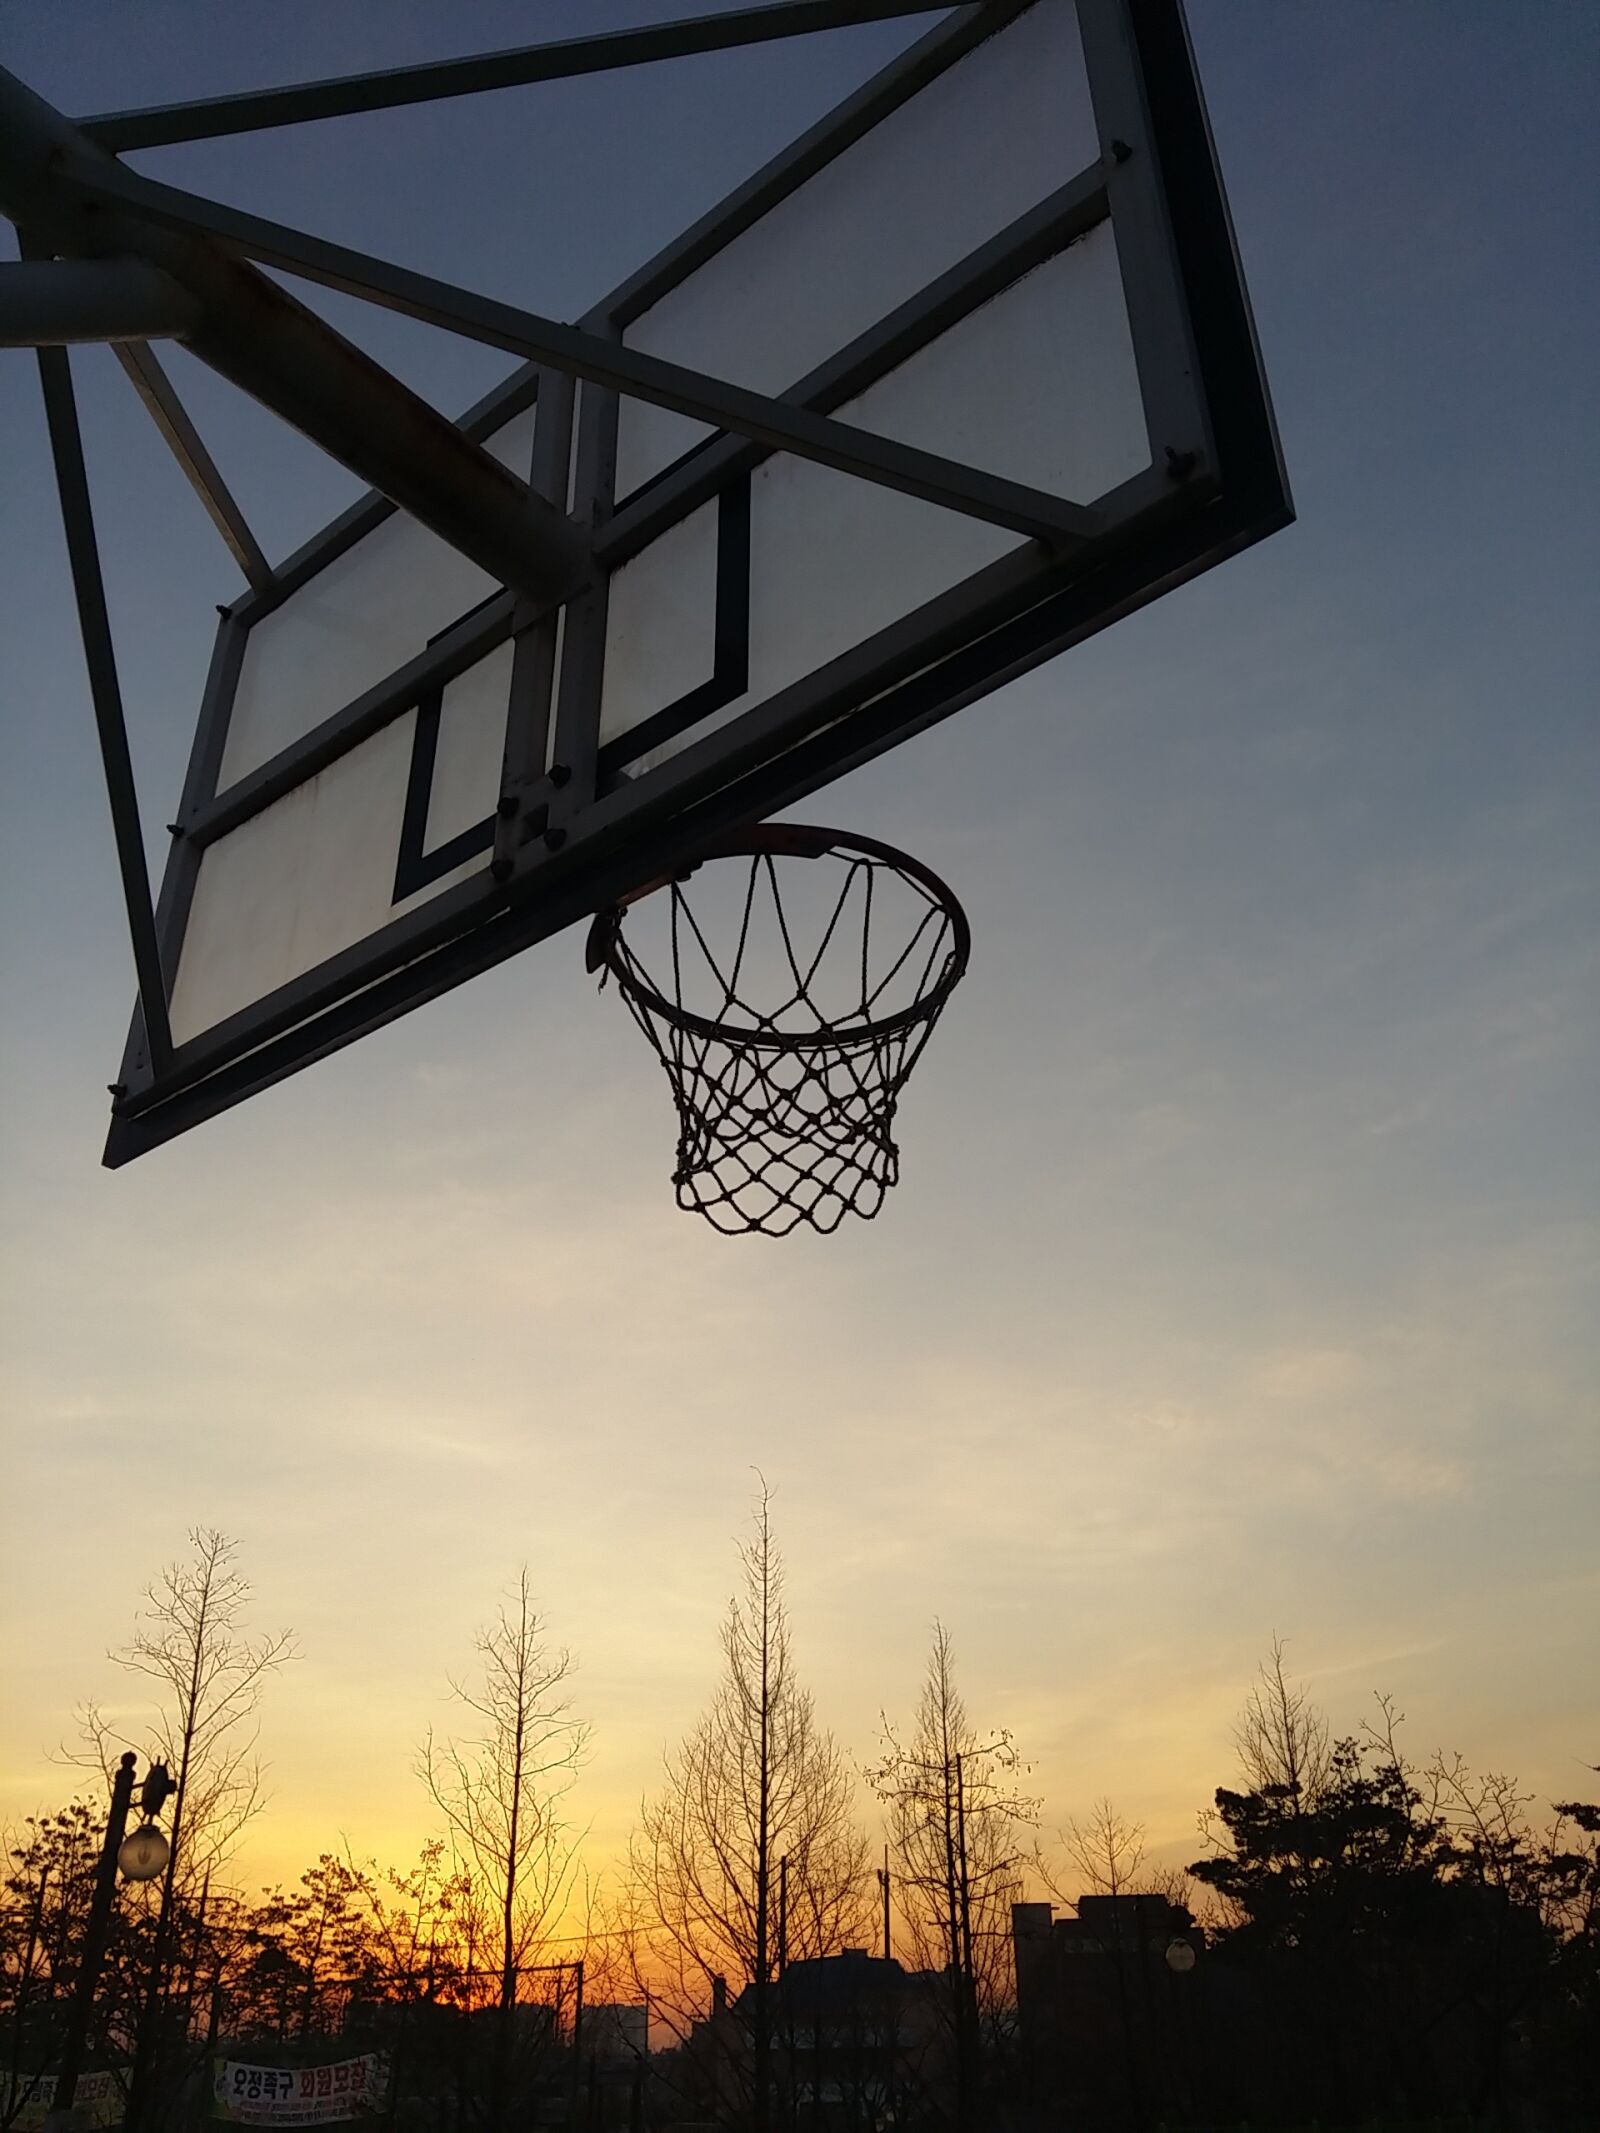 Samsung Galaxy A7 sample photo. Exercise, basketball, goal photography